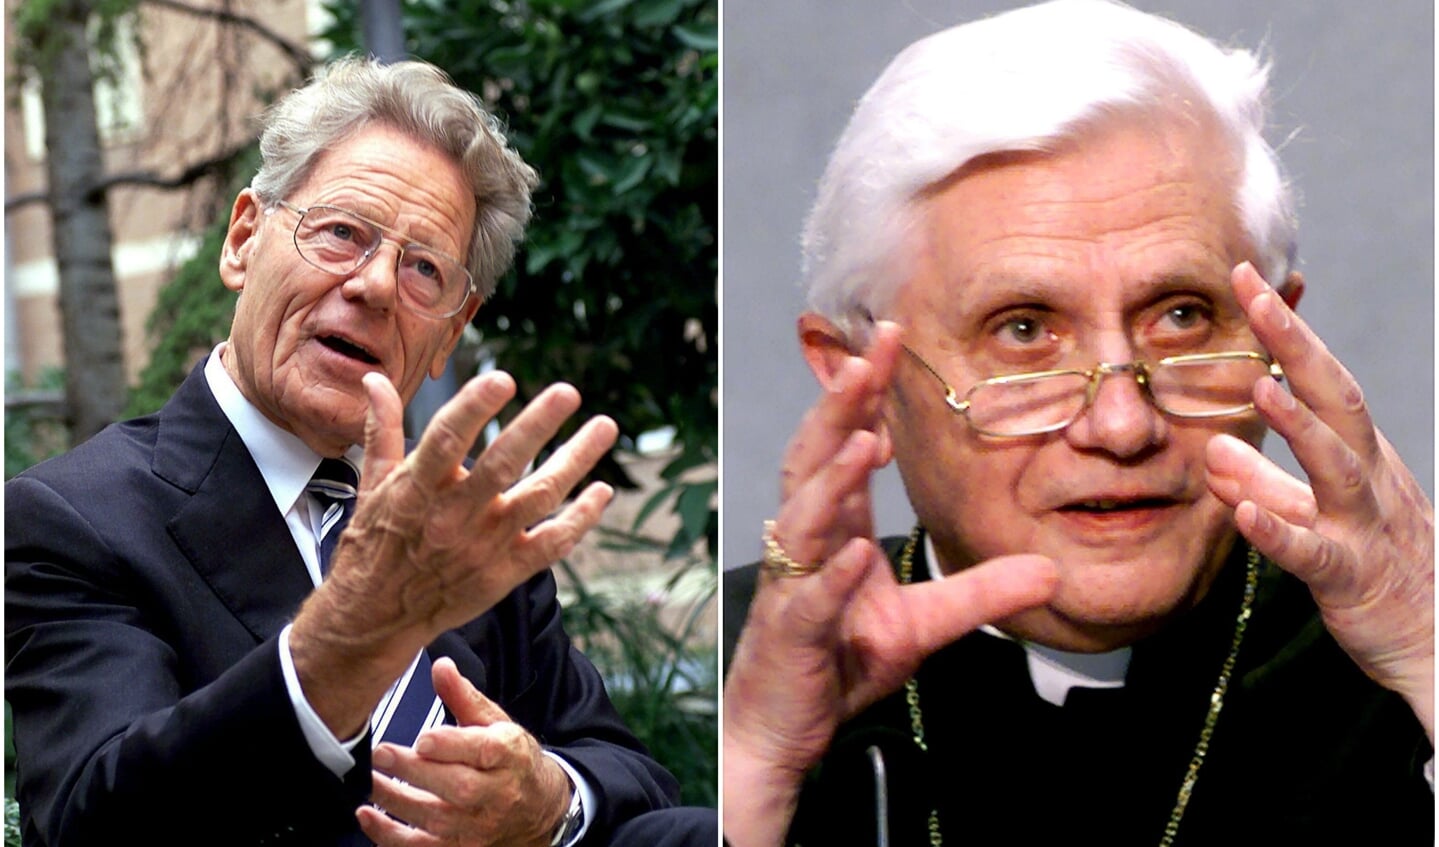 Theoloog Hans Küng in 2003 en paus Benedictus, toen nog kardinaal Ratzinger, in 2000.